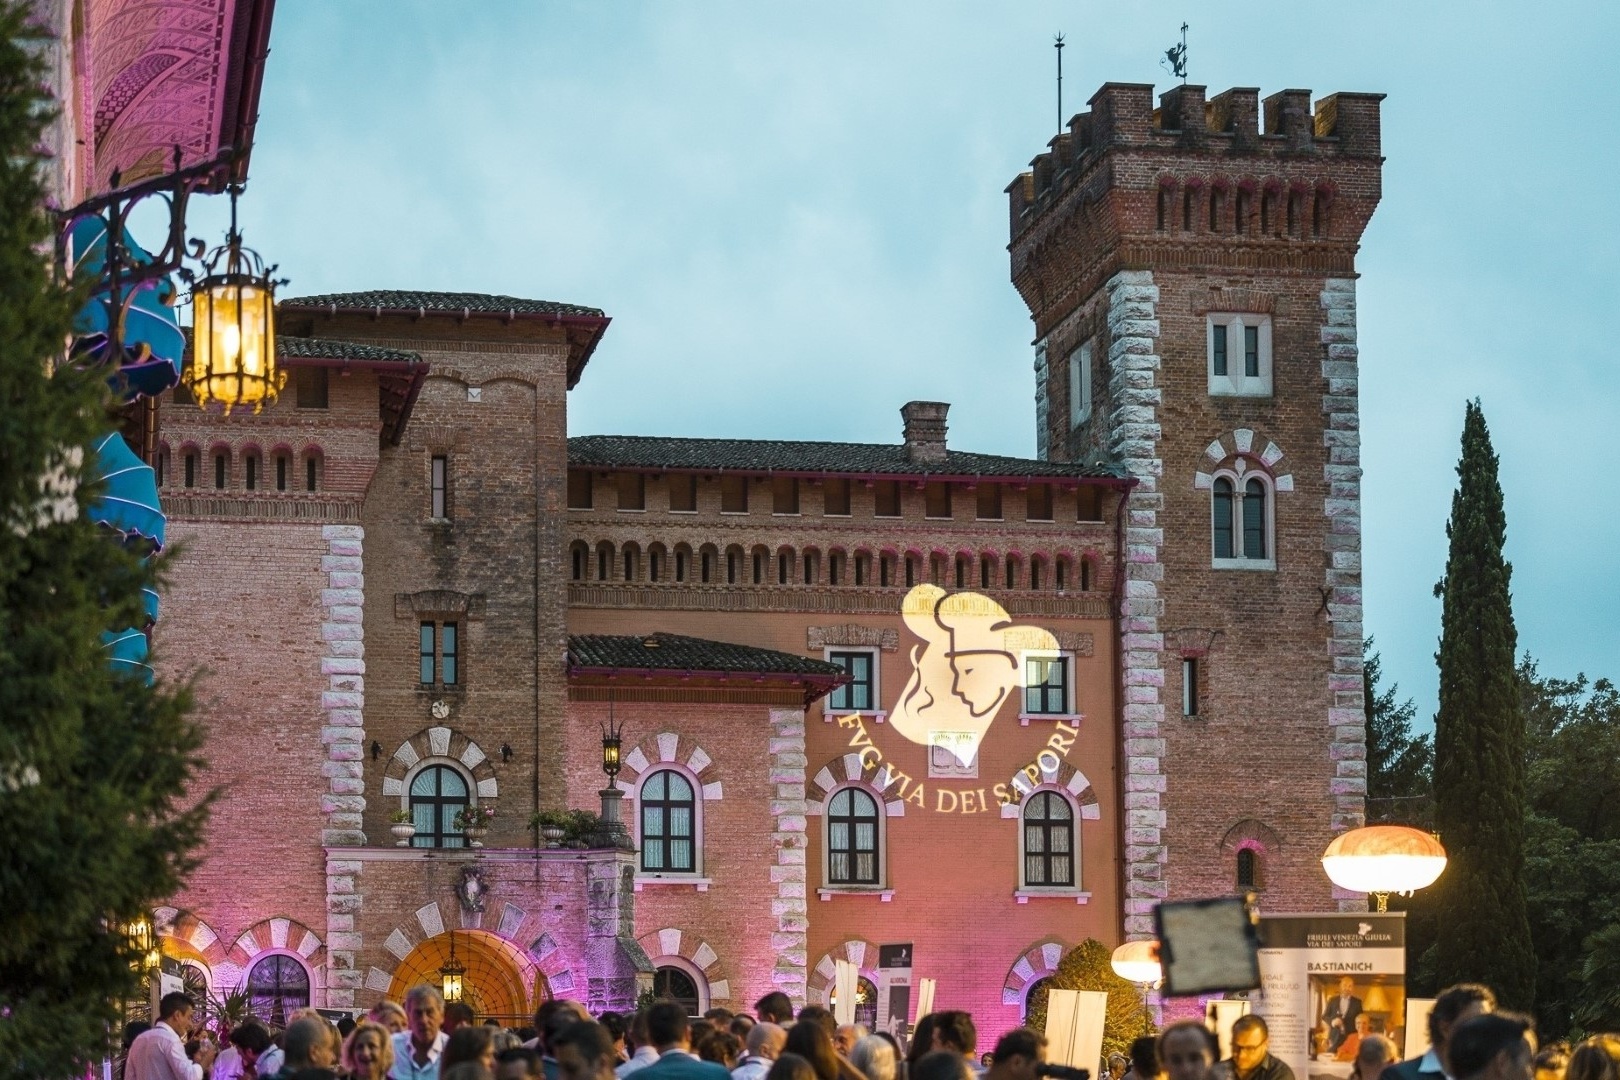 Martedì 26 luglio – Dinner Show di Friuli Venezia Giulia Via dei Sapori nel parco storico del Castello di Spessa di Capriva del Friuli (Go)